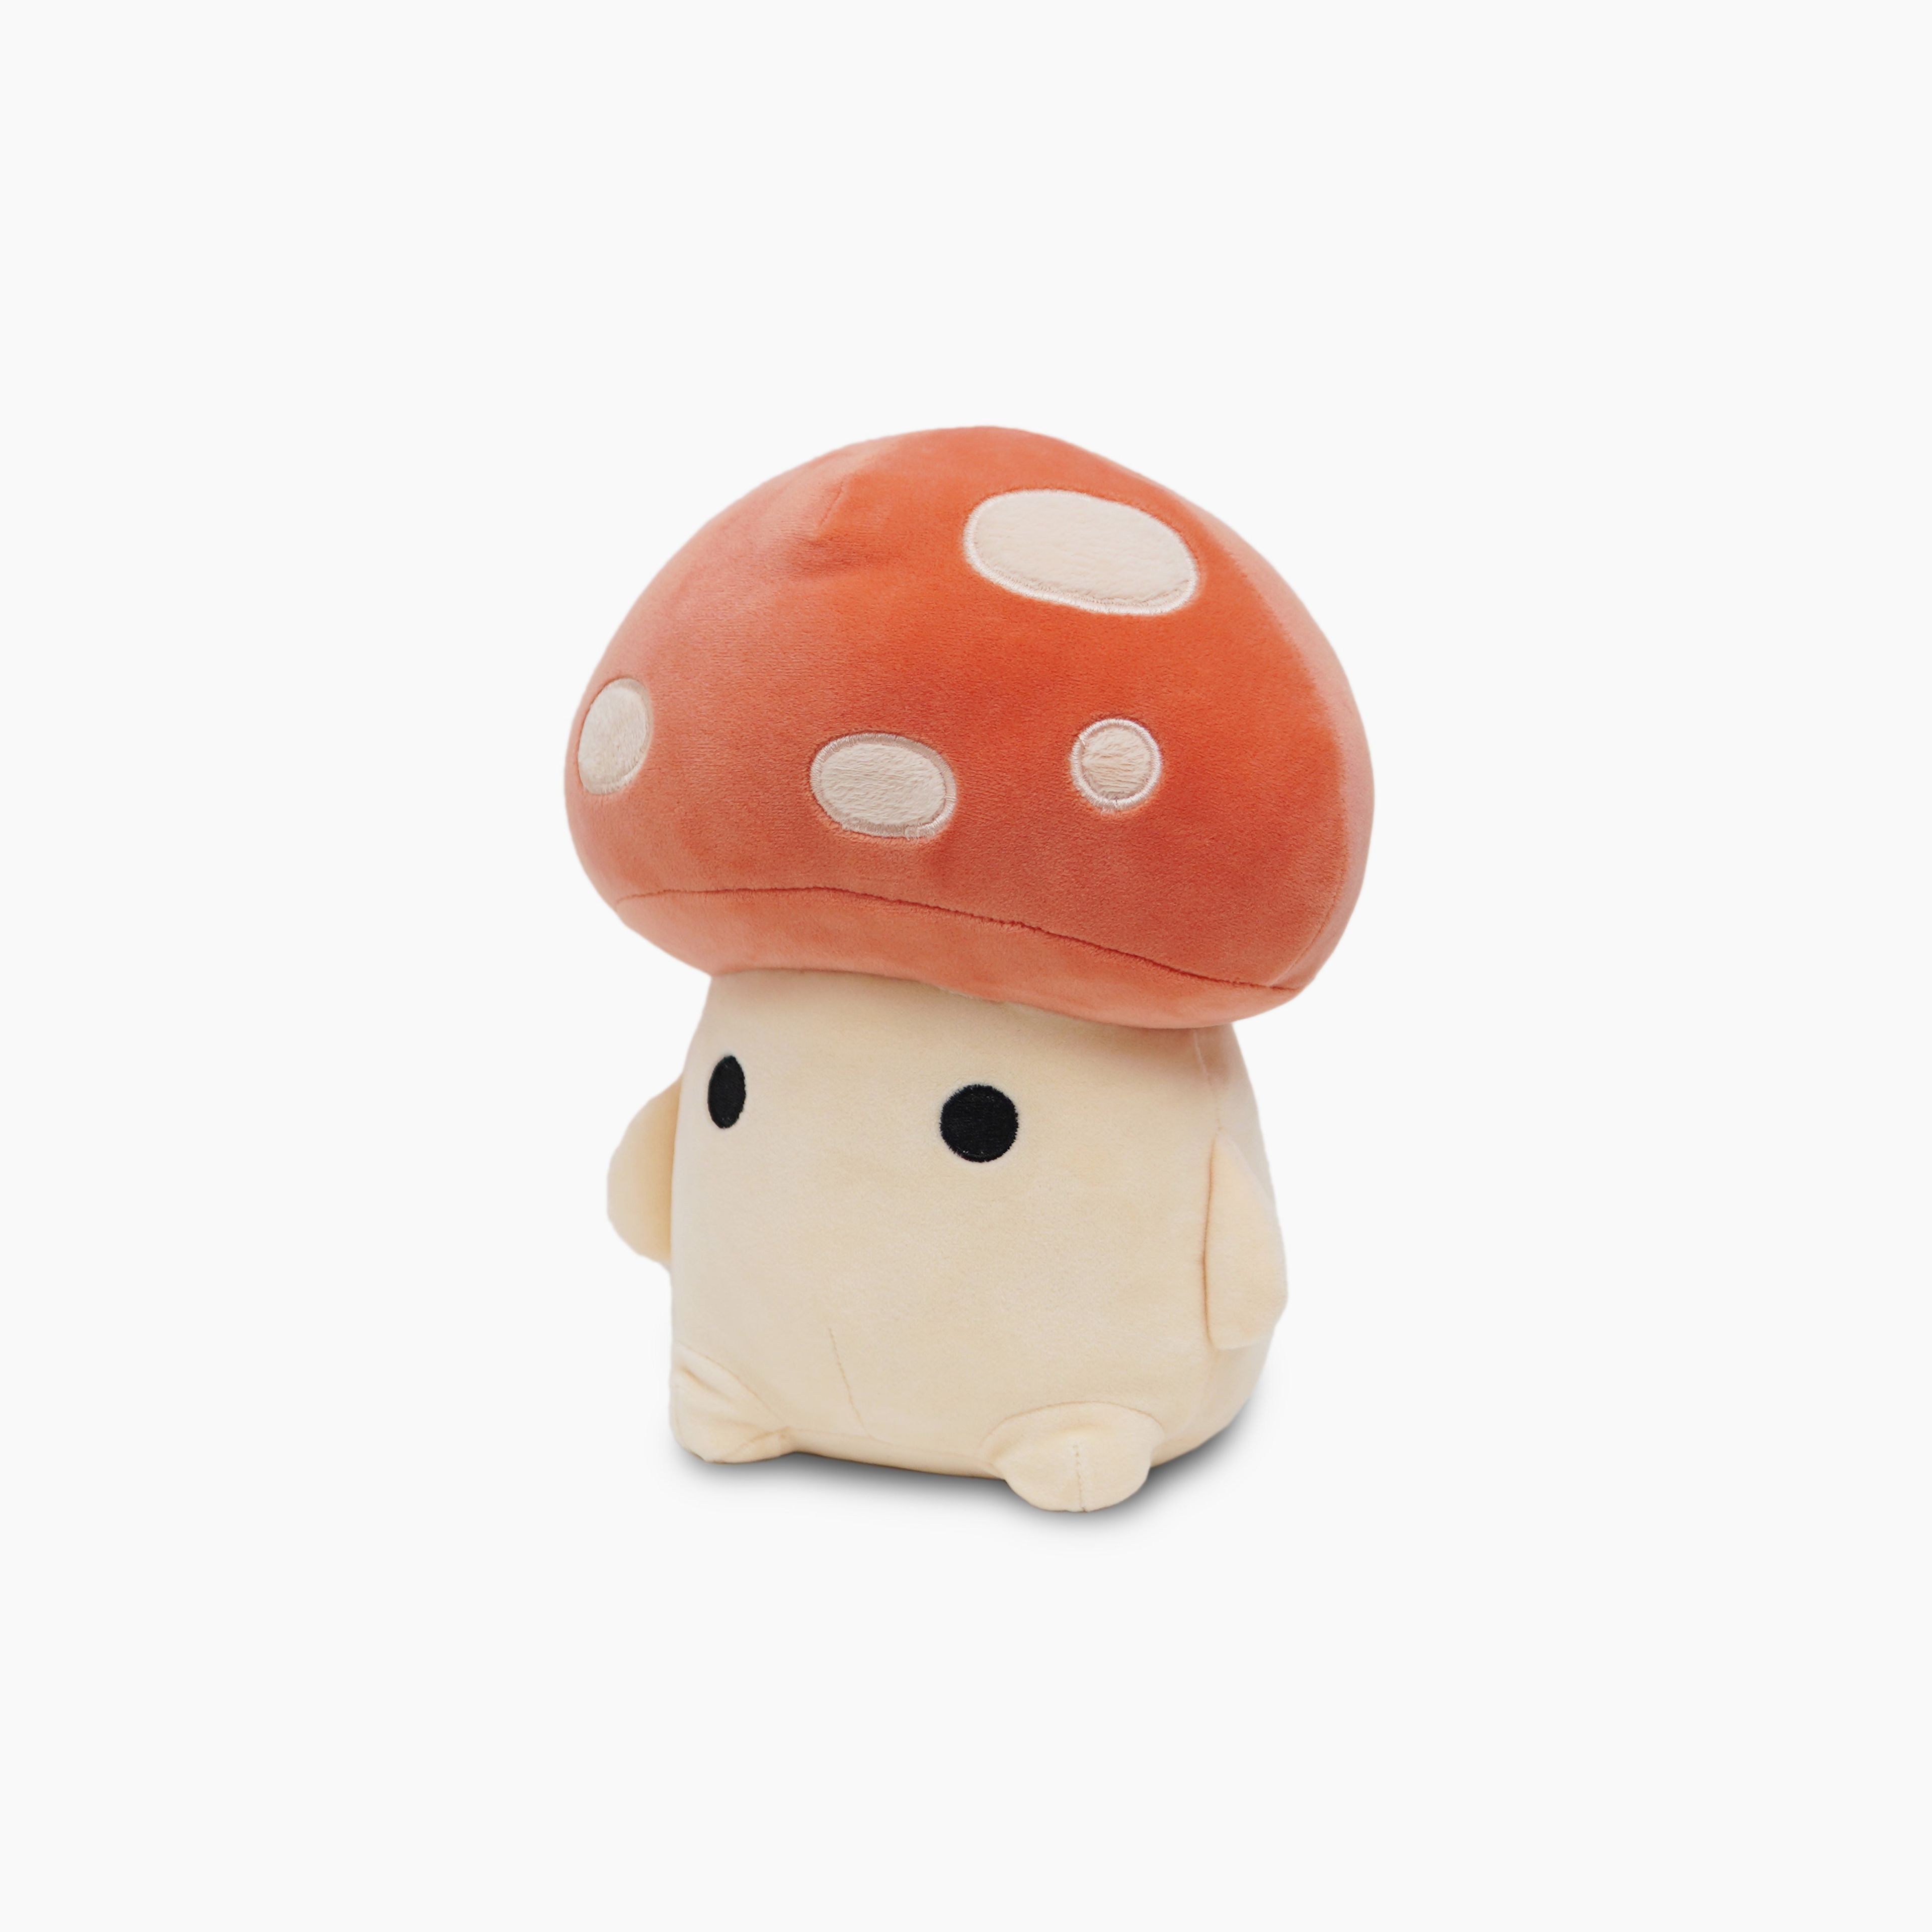 Avocatt Kawaii Mushroom Plush Stuffed Animal